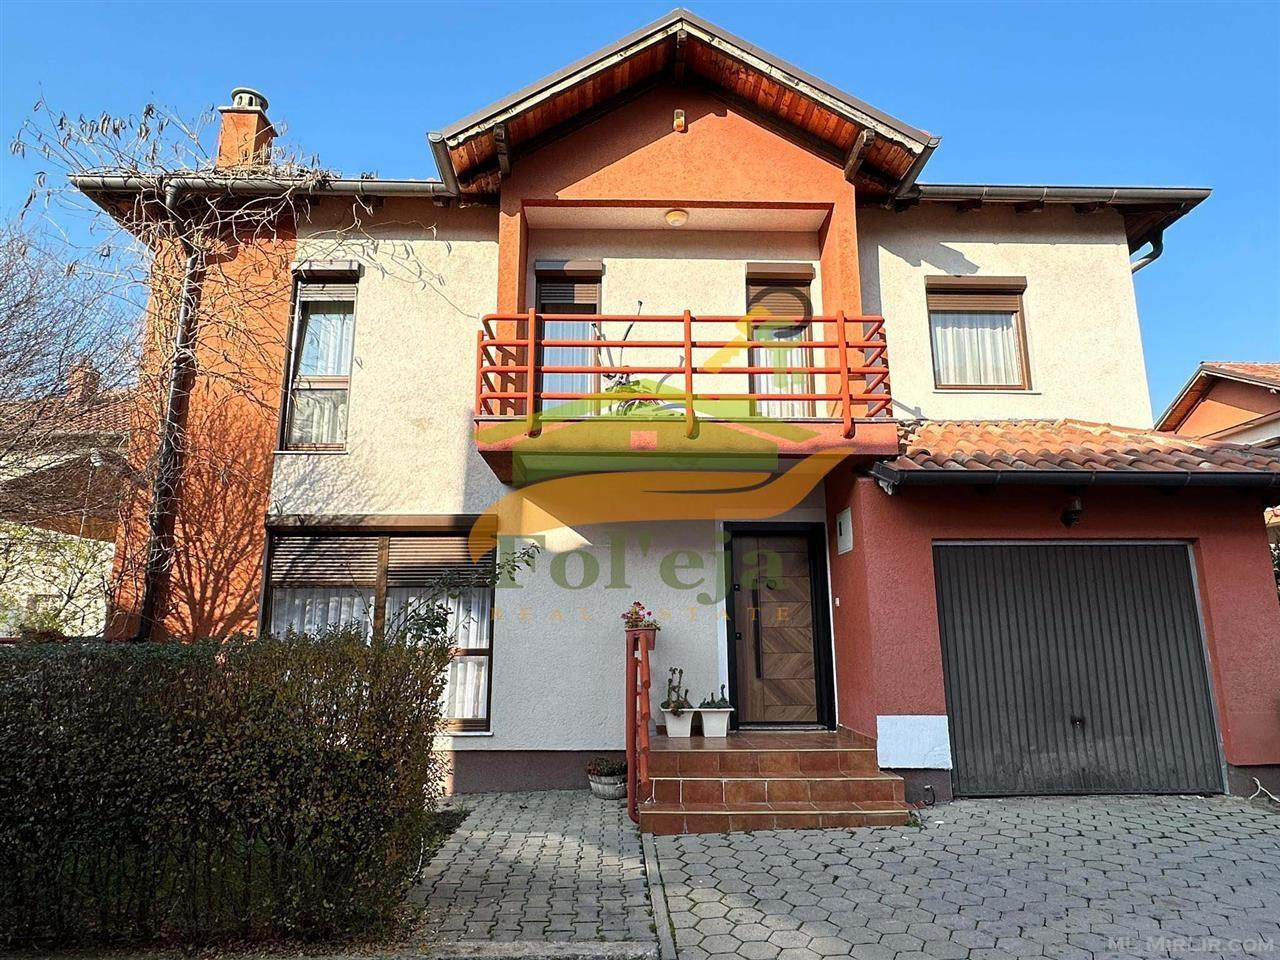 Ofrohet për #SHITJE Shtëpi 202m² në Veterrnik në lagjen Nic-